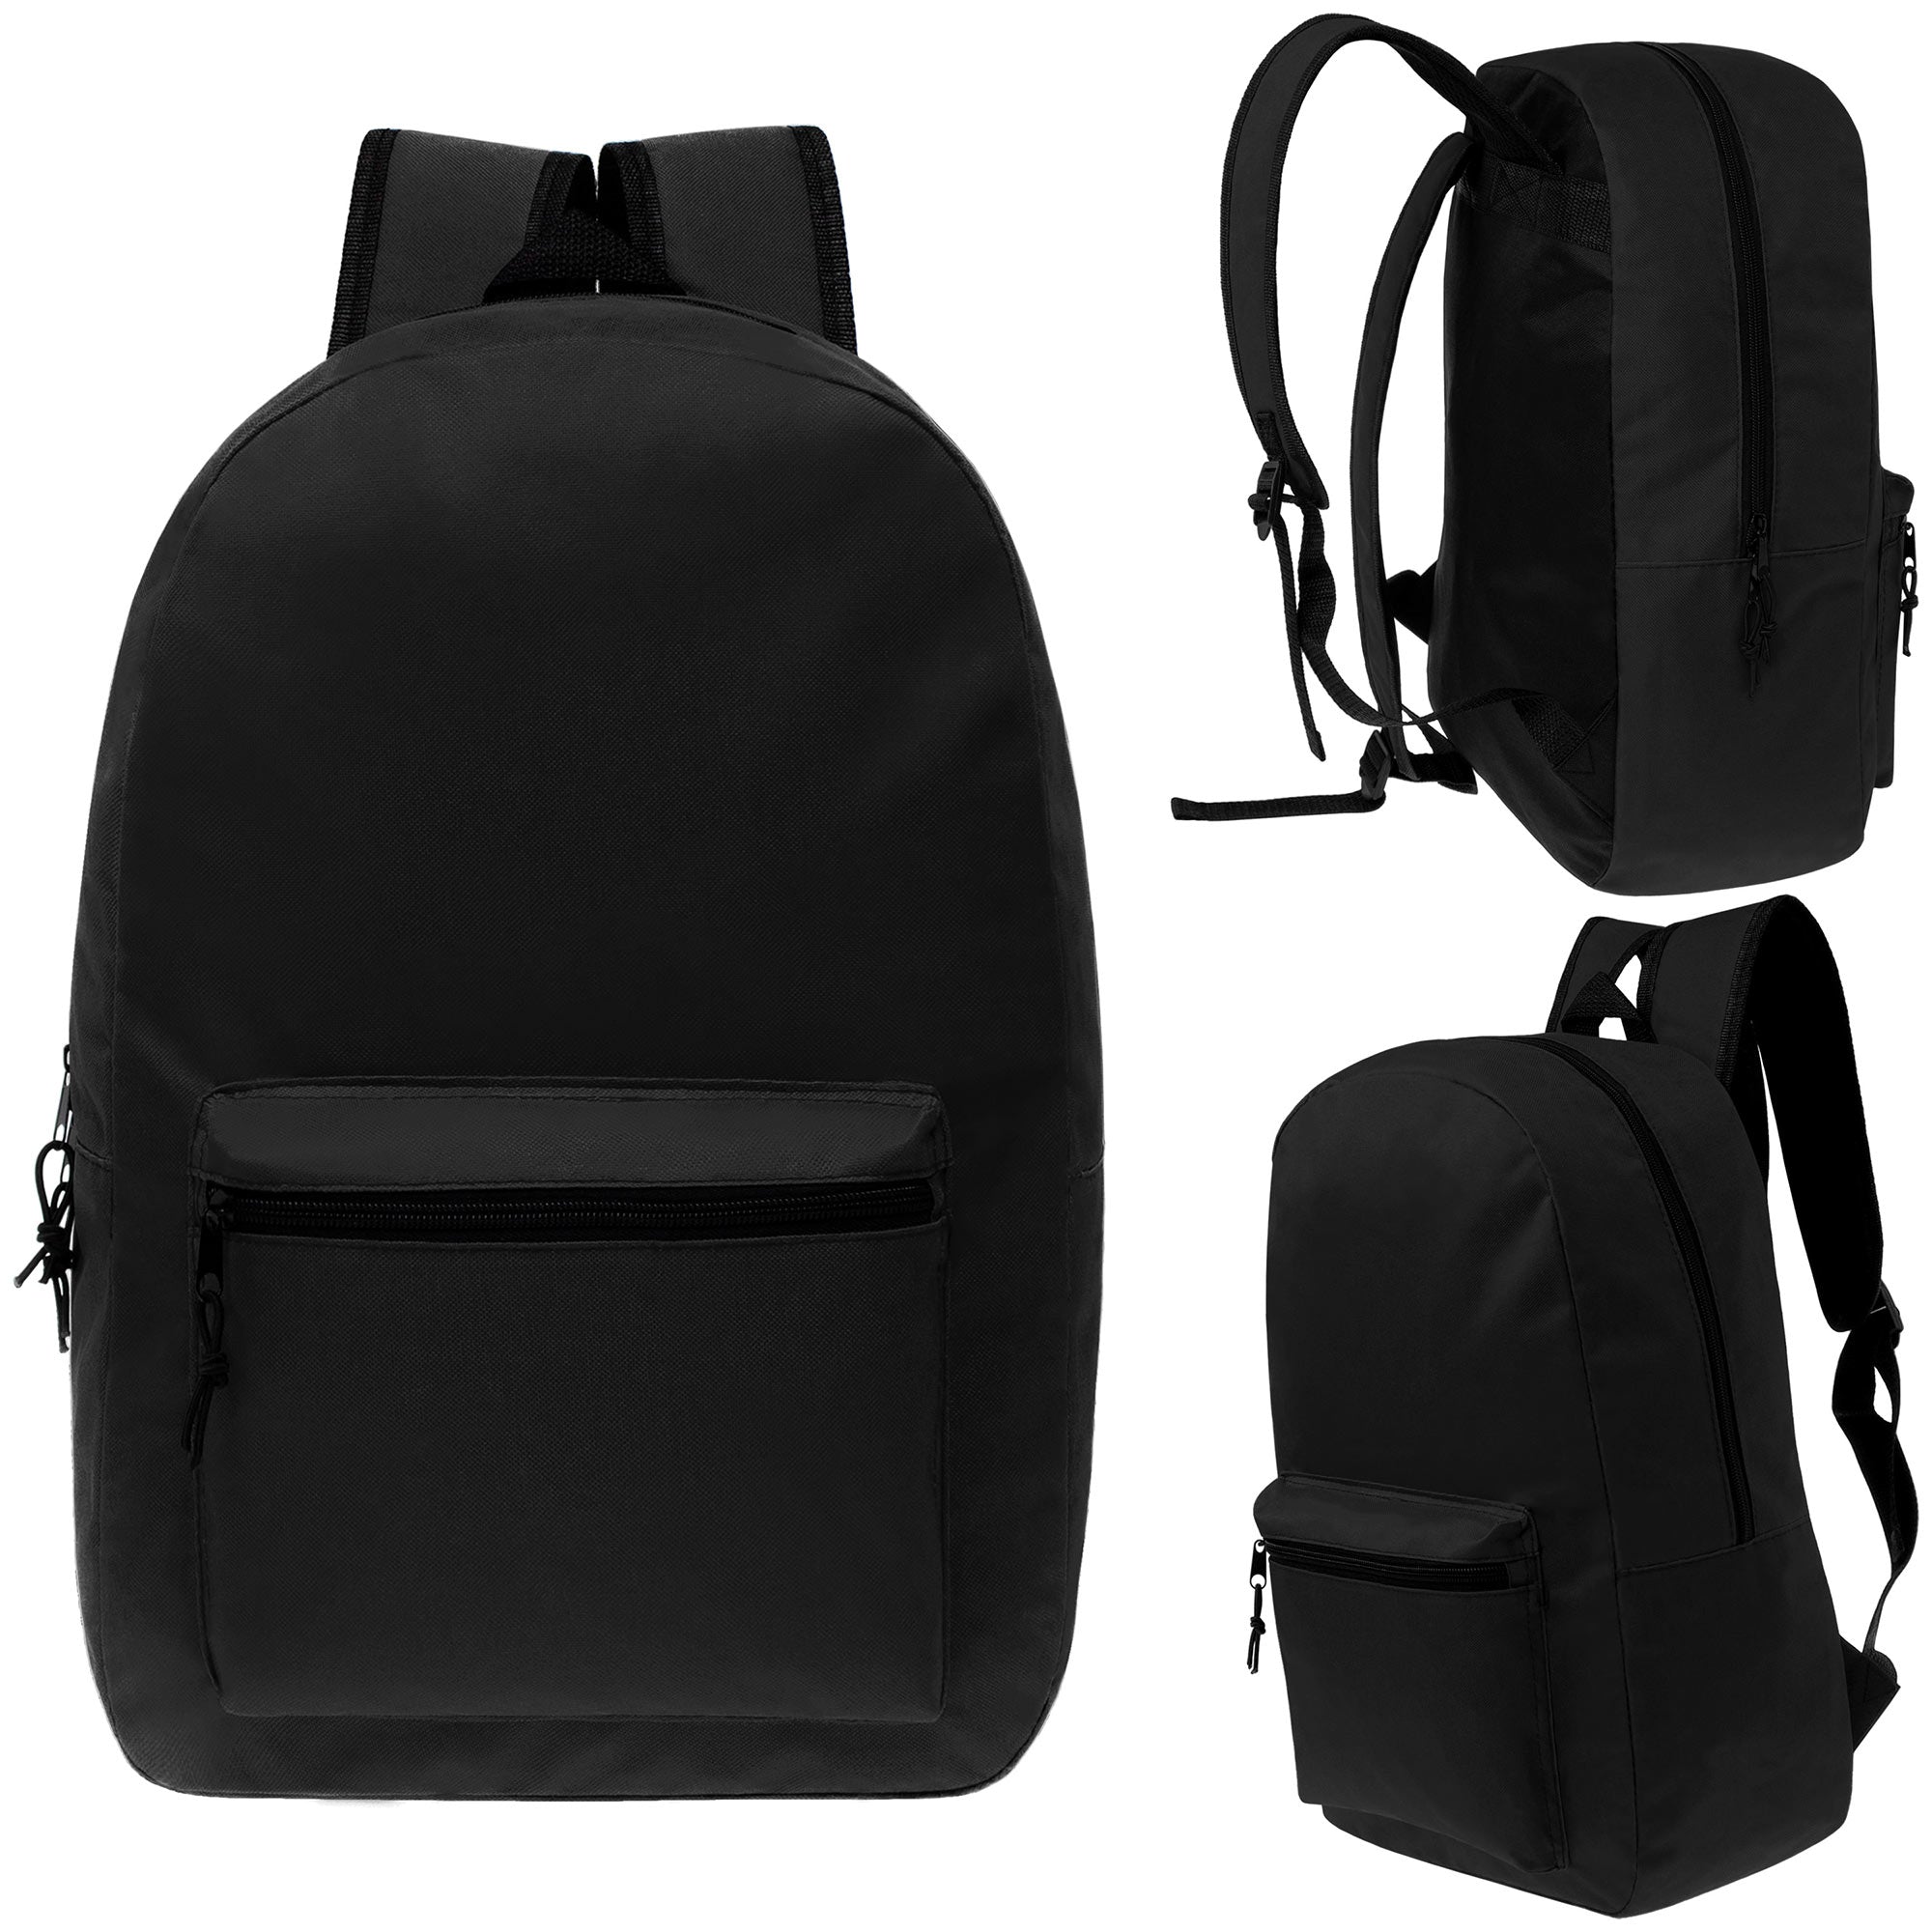 15" wholesale backpack in black